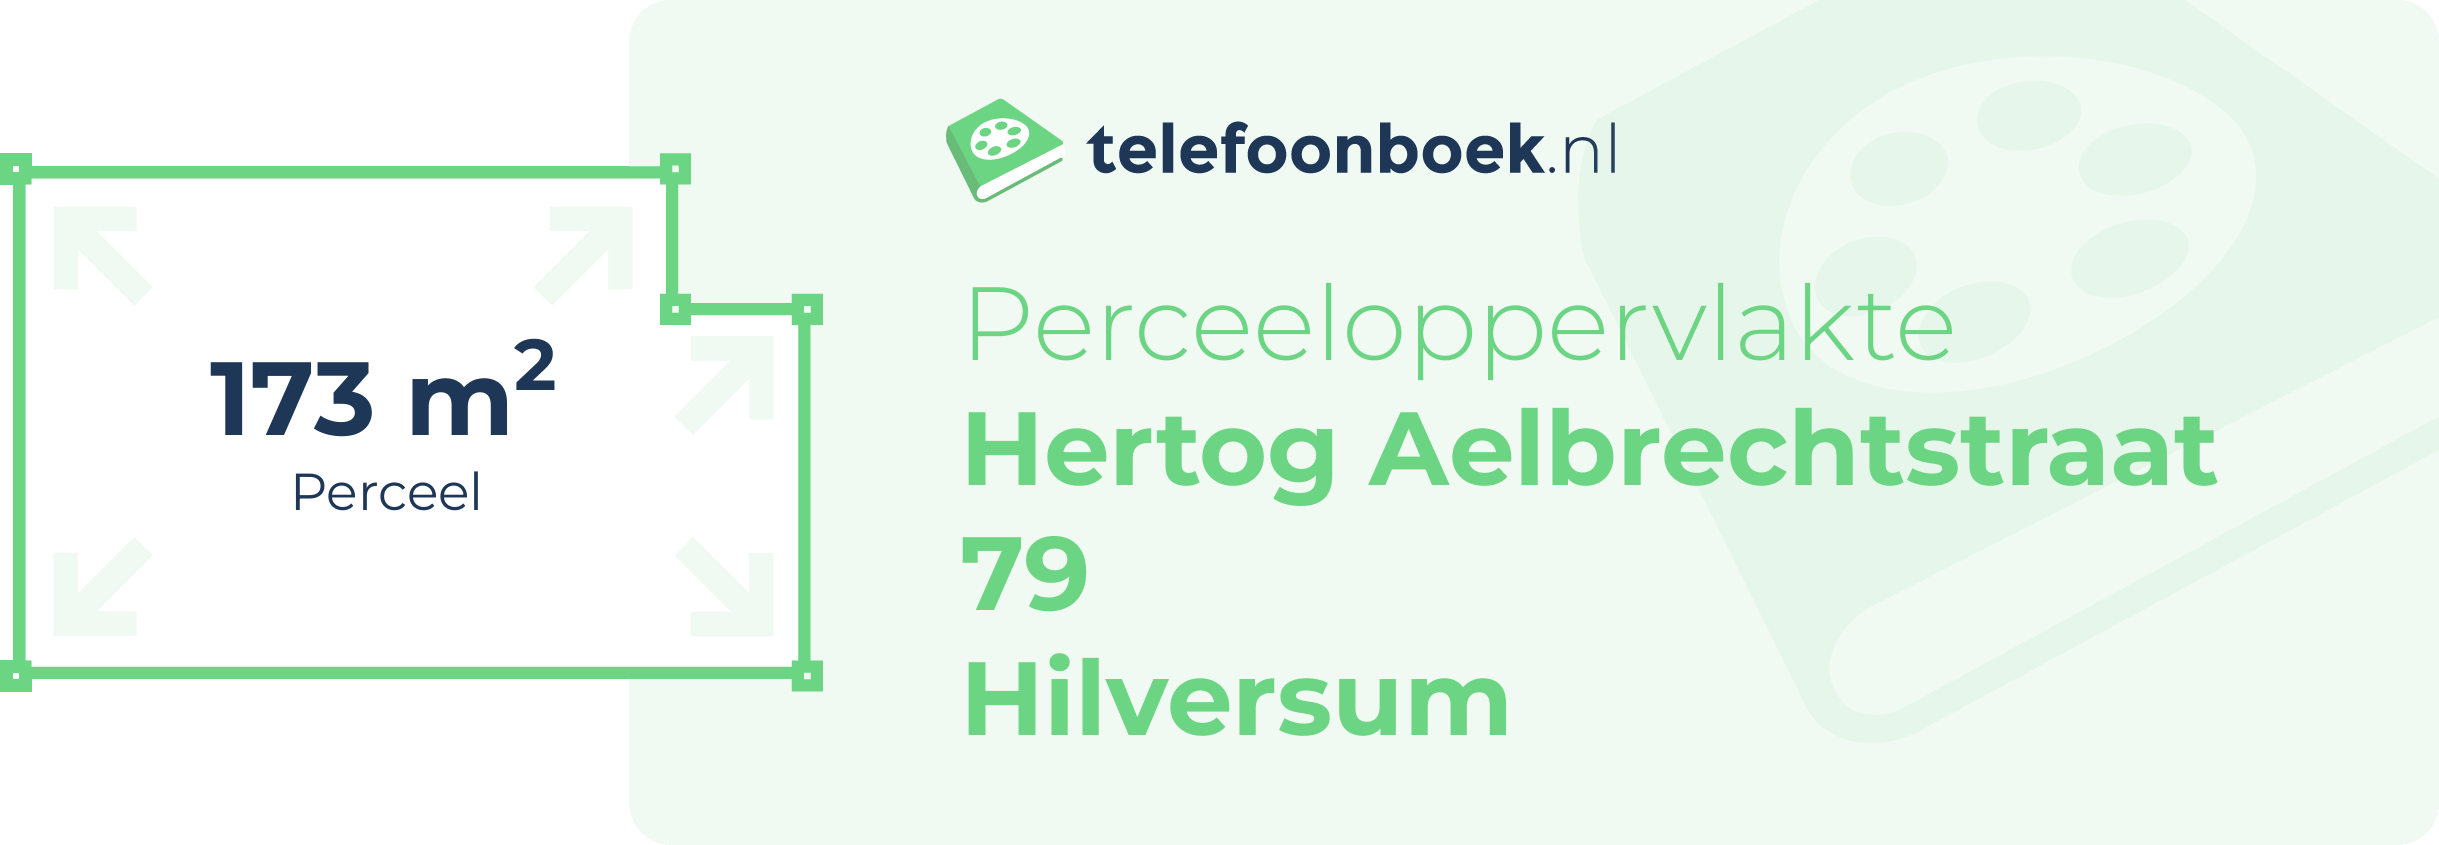 Perceeloppervlakte Hertog Aelbrechtstraat 79 Hilversum